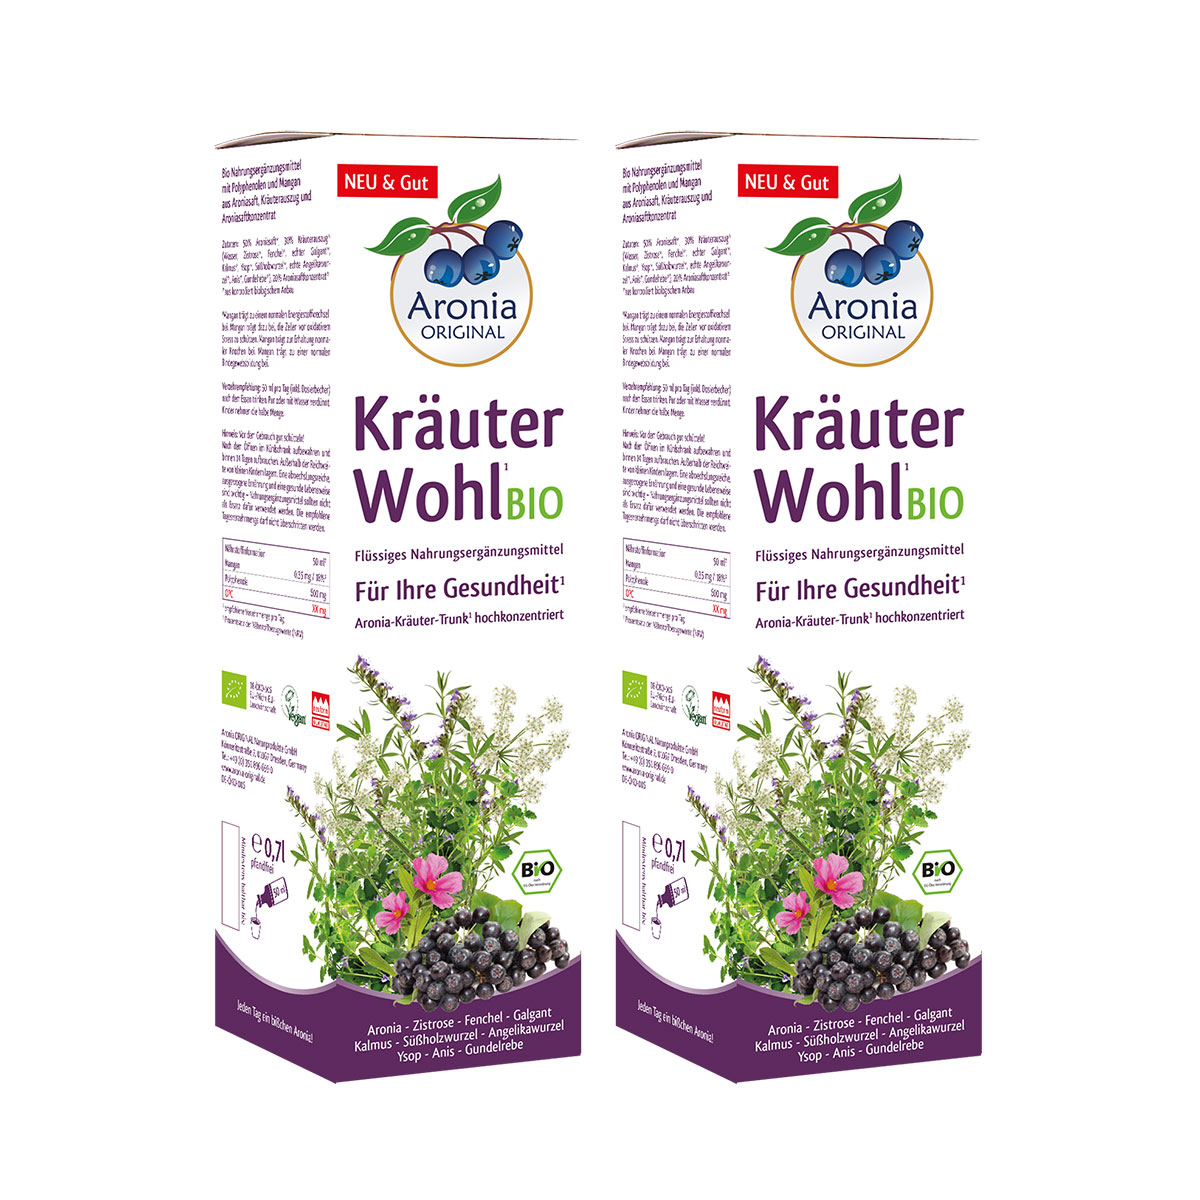 Bio KräuterWohl, 2 Flaschen 0,7l